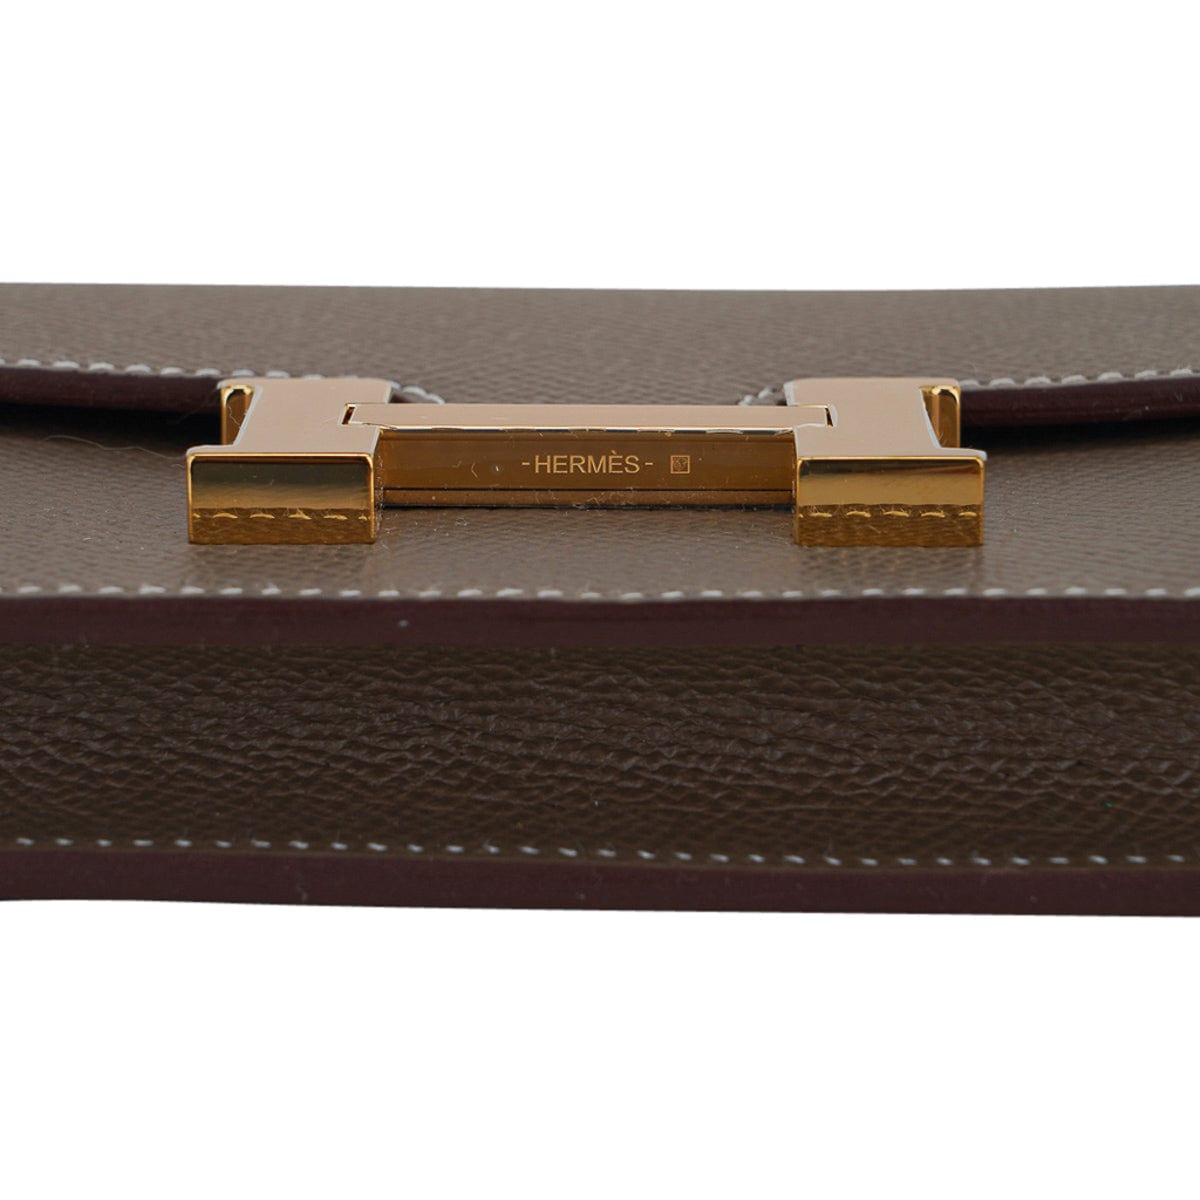 Hermes Constance Slim Wallet Belt Bag Etoupe Epsom Leather with